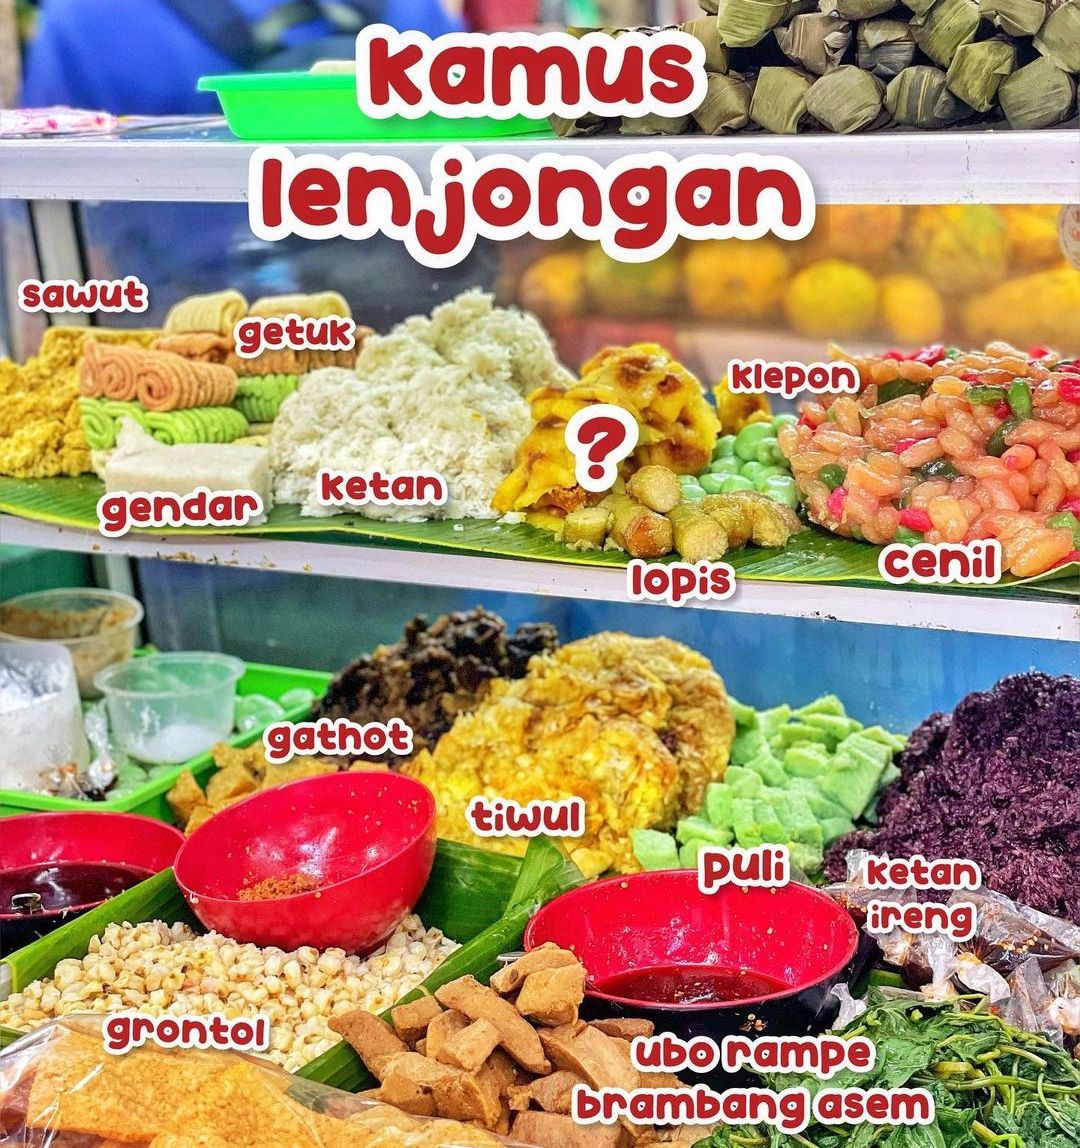 Lenjongan Salah Satu Kuliner Pasar Gede - 7 Rekomendasi Tempat Wisata Terbaru di Solo 